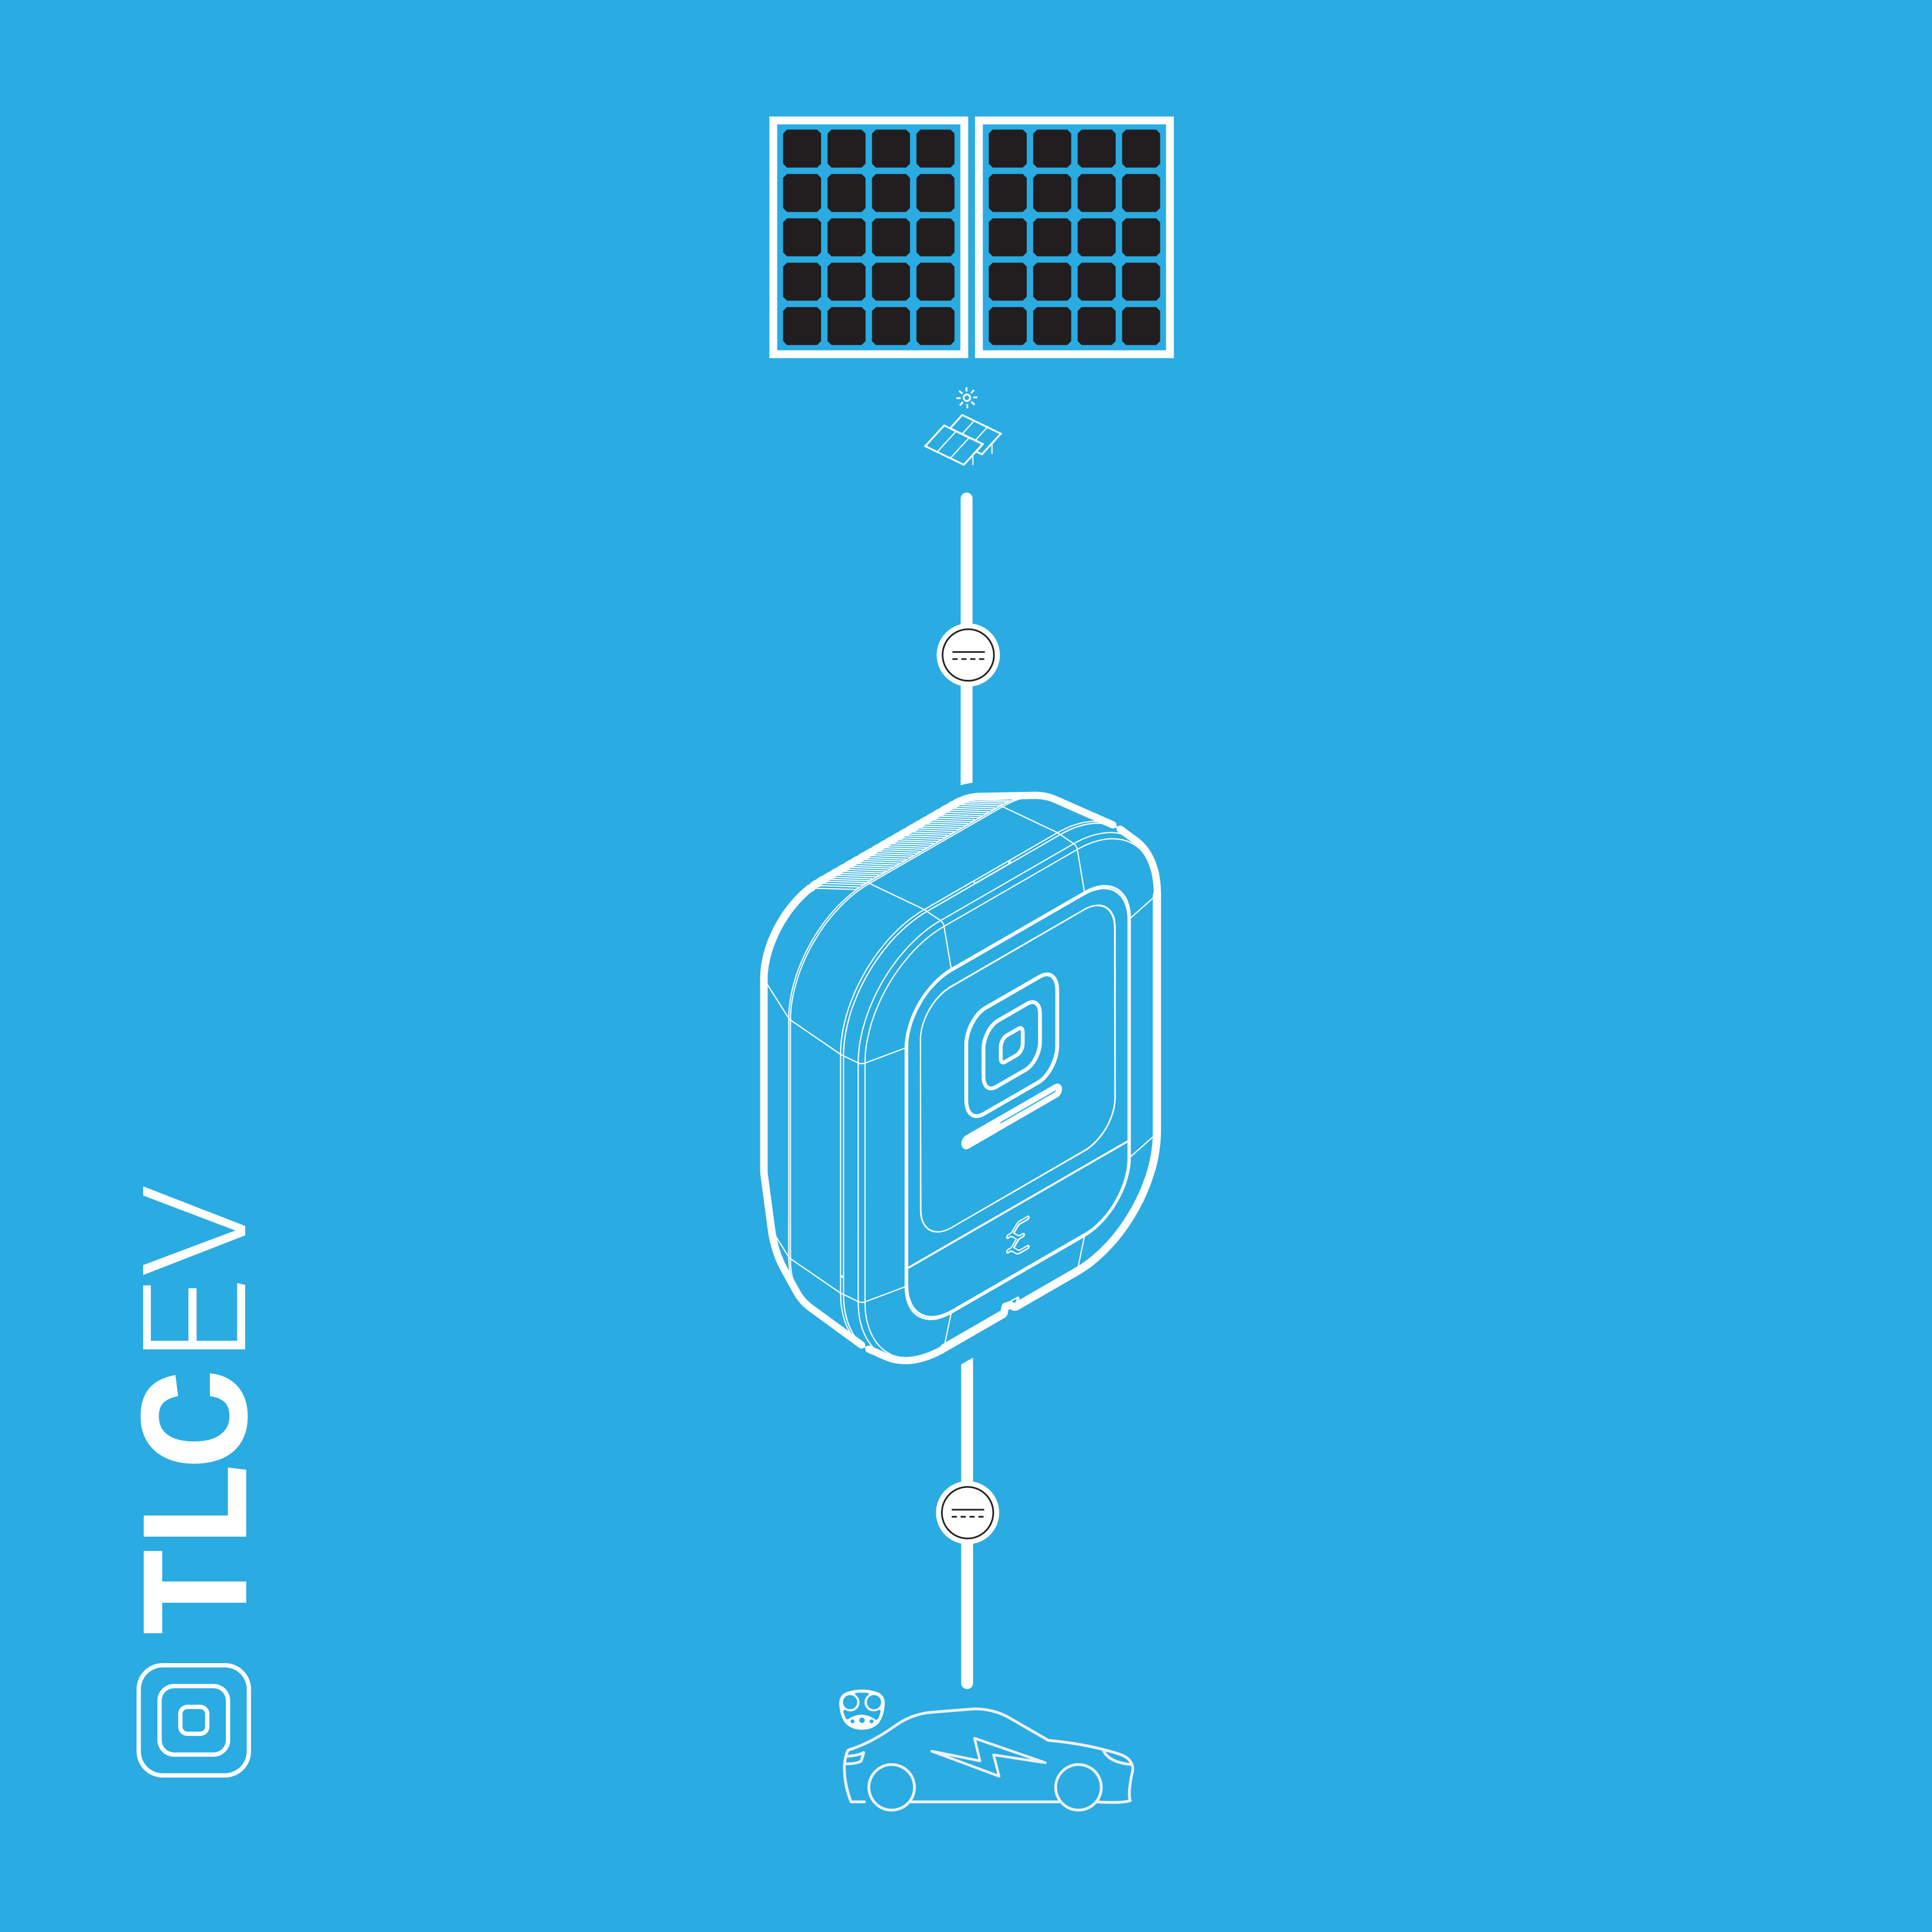 Enteligent™ TLCEV T1 - Trusted Charging - Pre-order Deposit